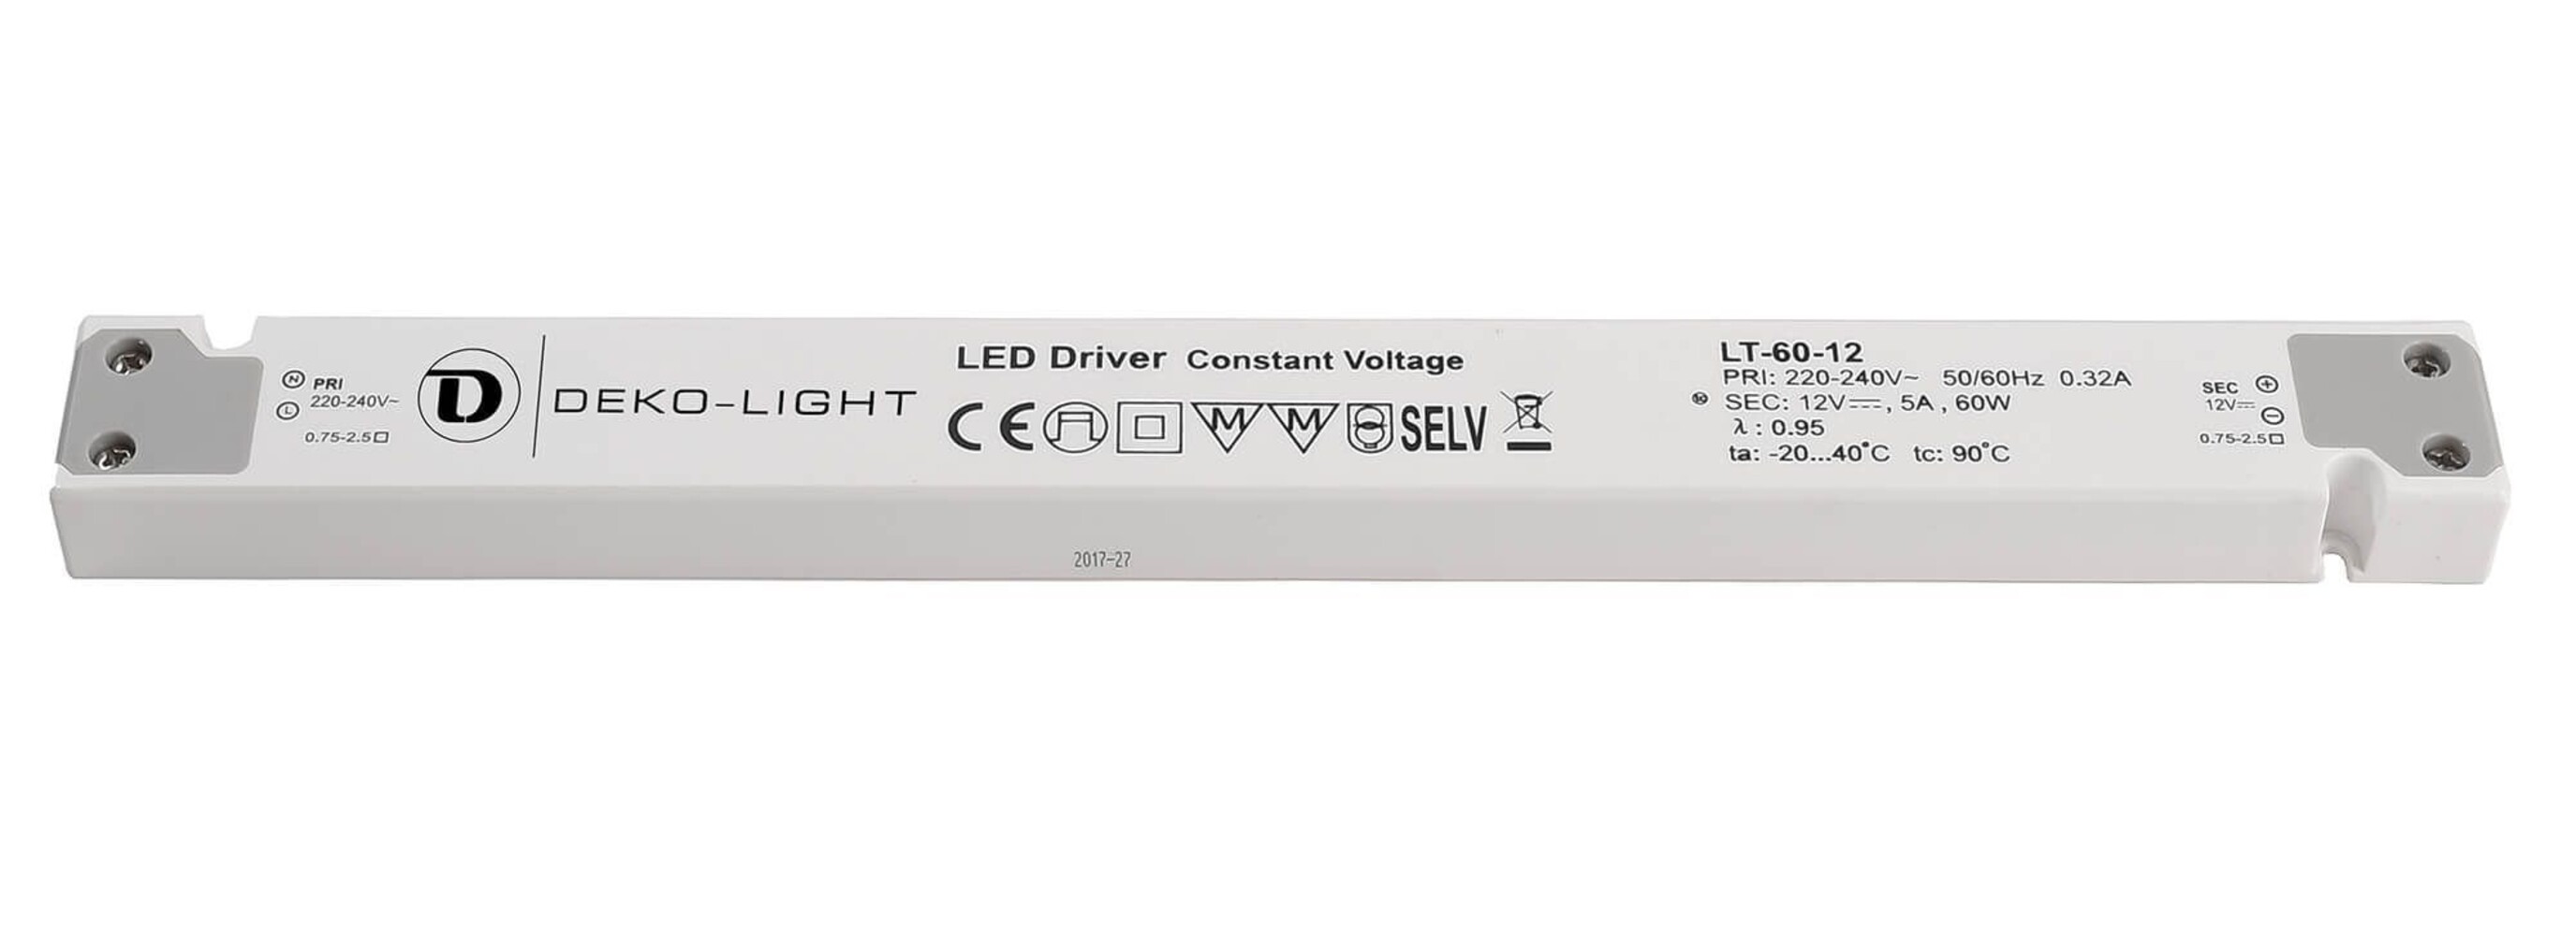 Qualitatives LED Netzteil von der Marke Deko-Light, abgestimmt auf einen sicheren und effizienten Betrieb.